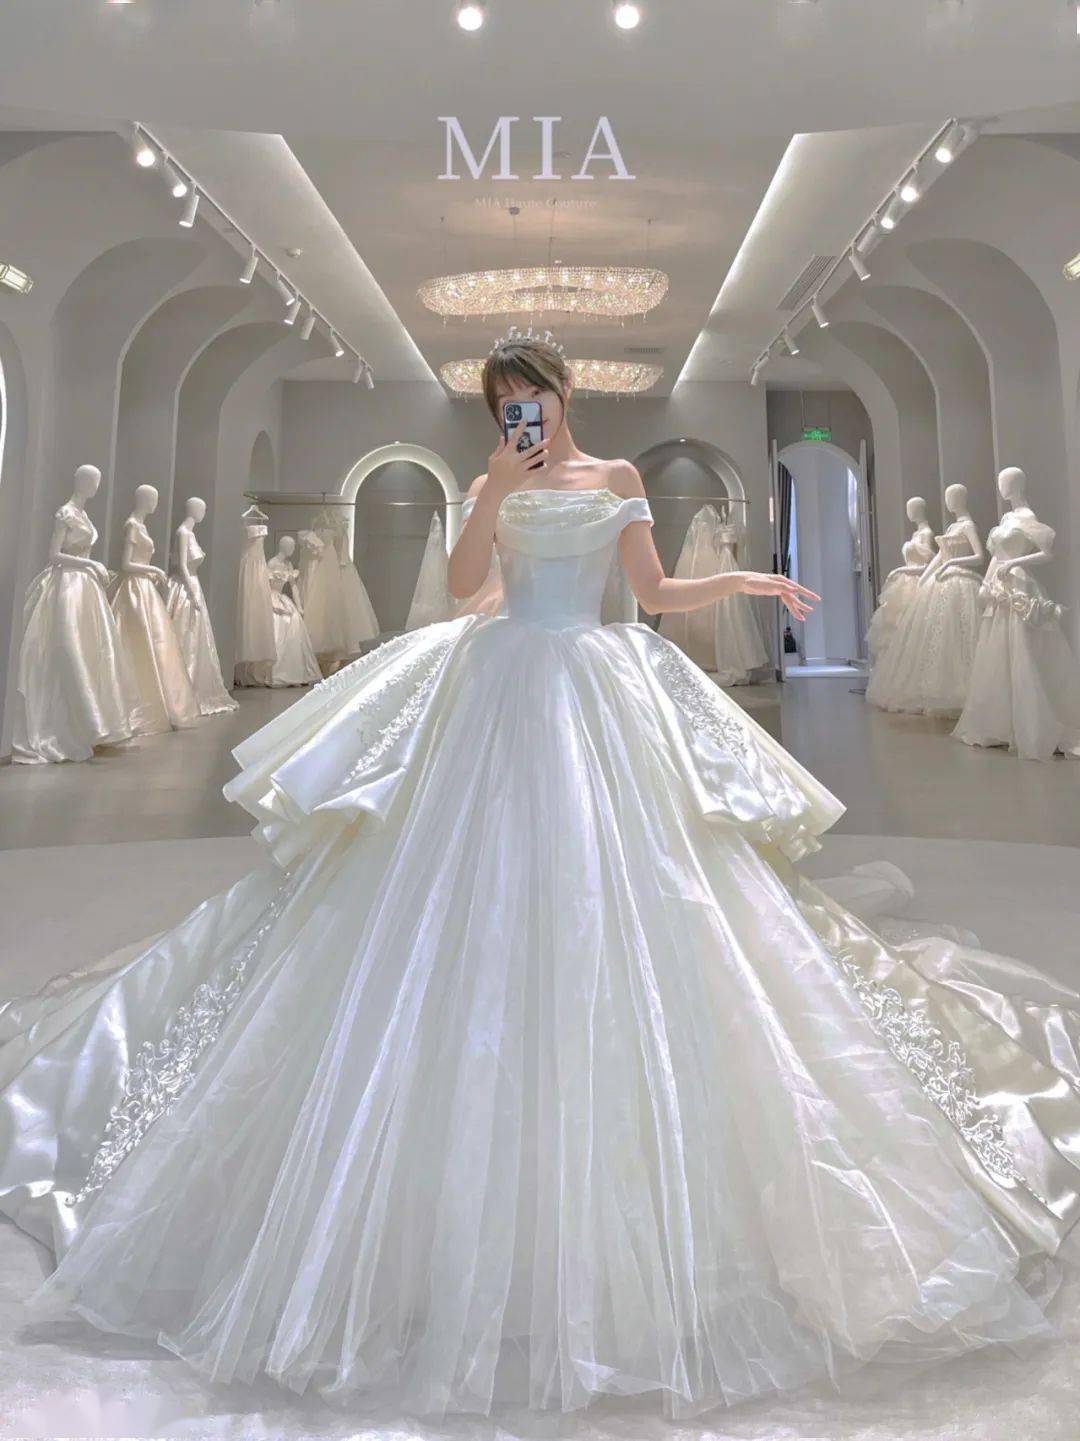 迪士尼公主的婚纱礼服 大裙摆白色婚纱你喜欢哪一款